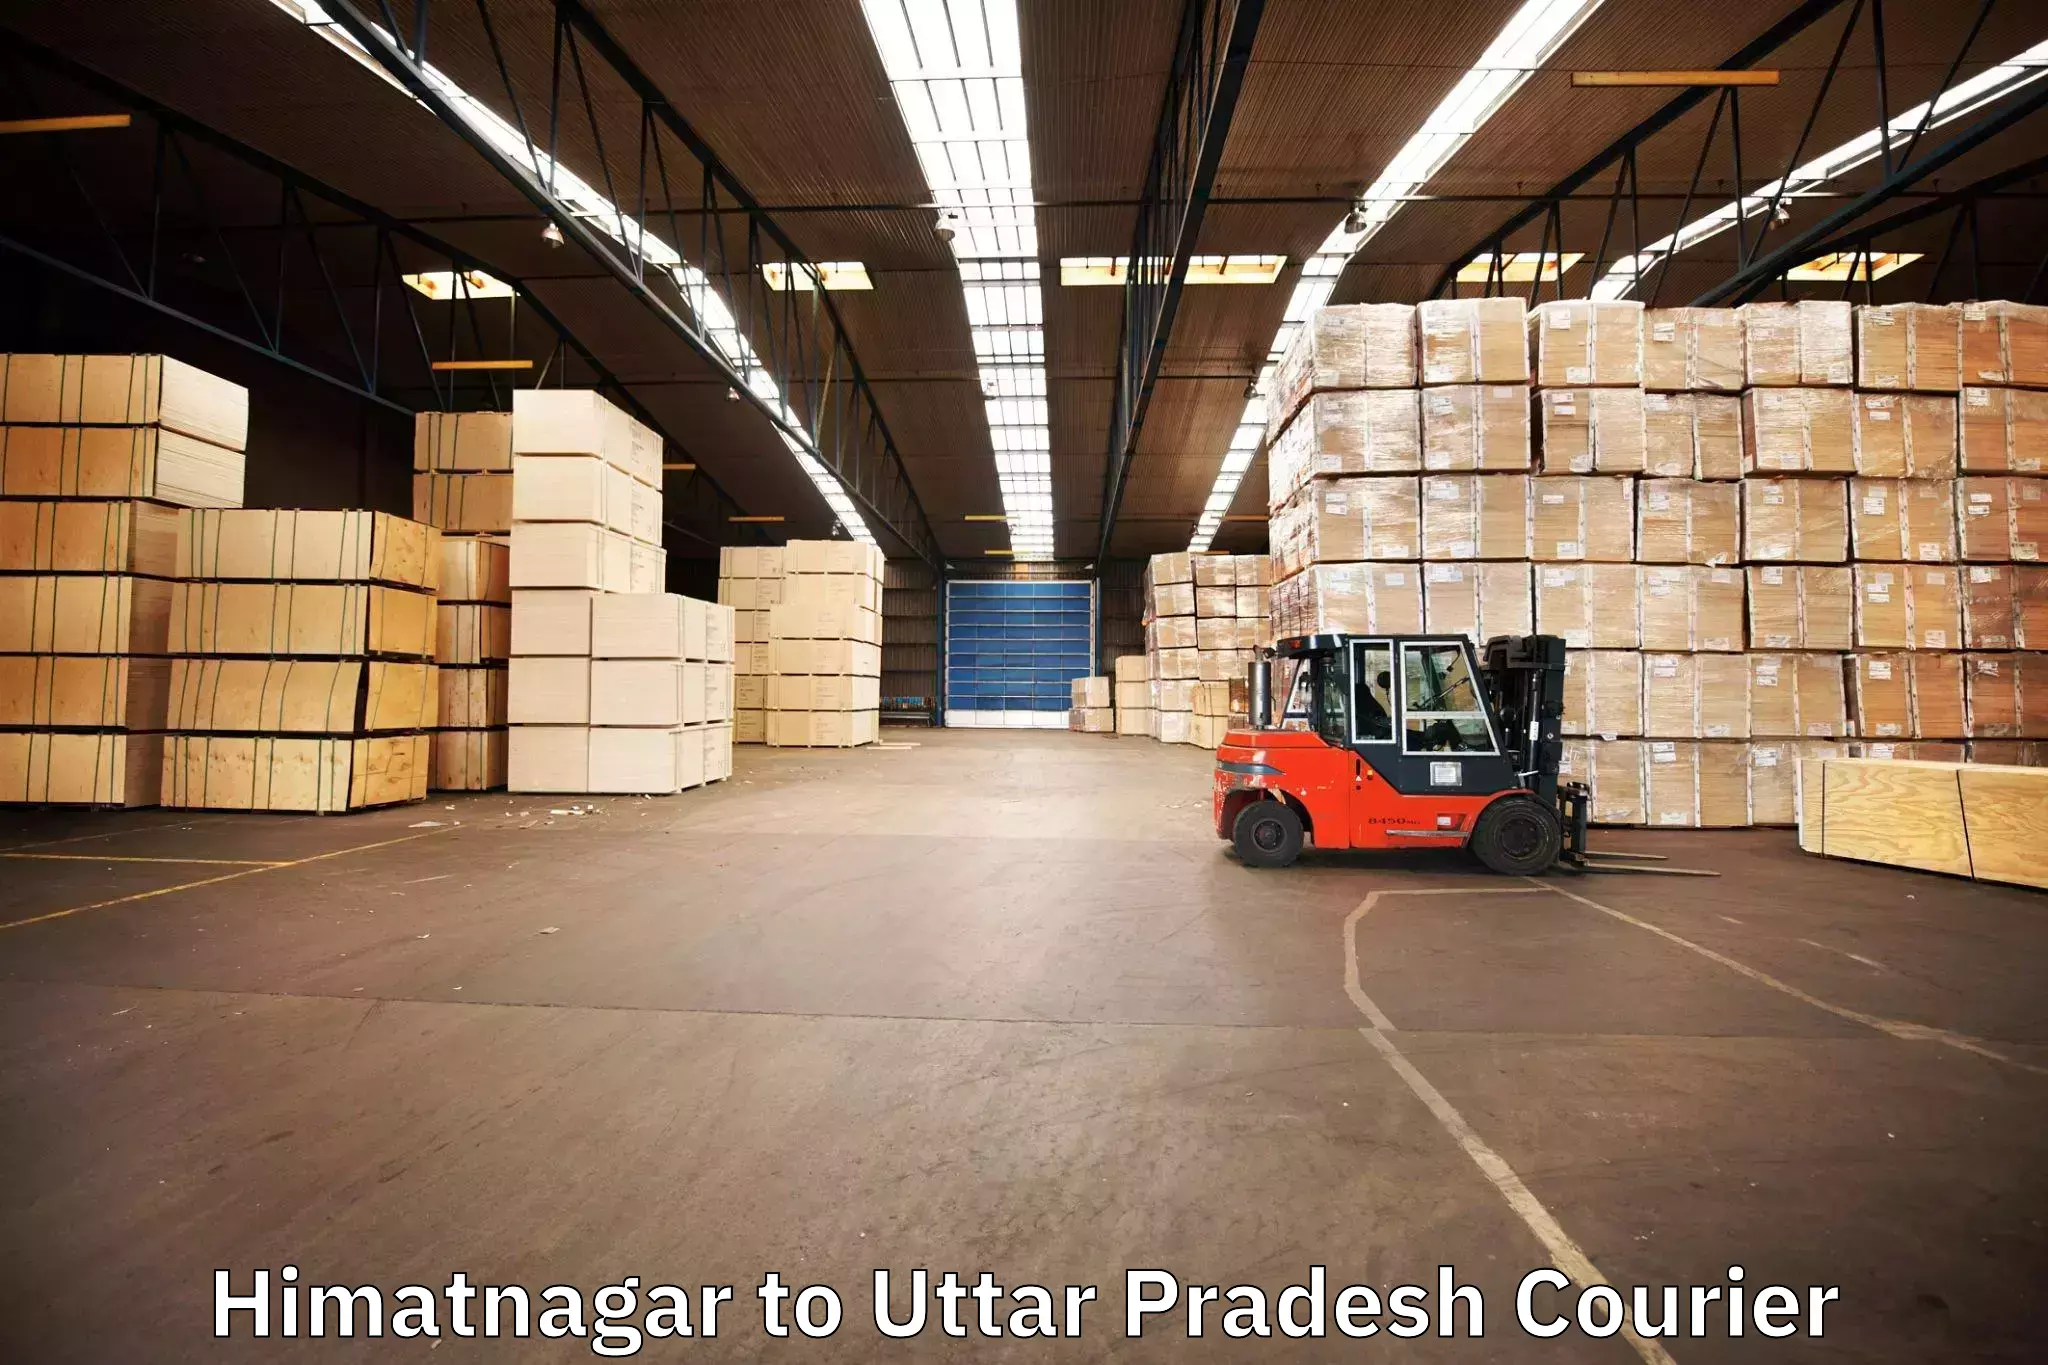 Efficient relocation services Himatnagar to Uttar Pradesh